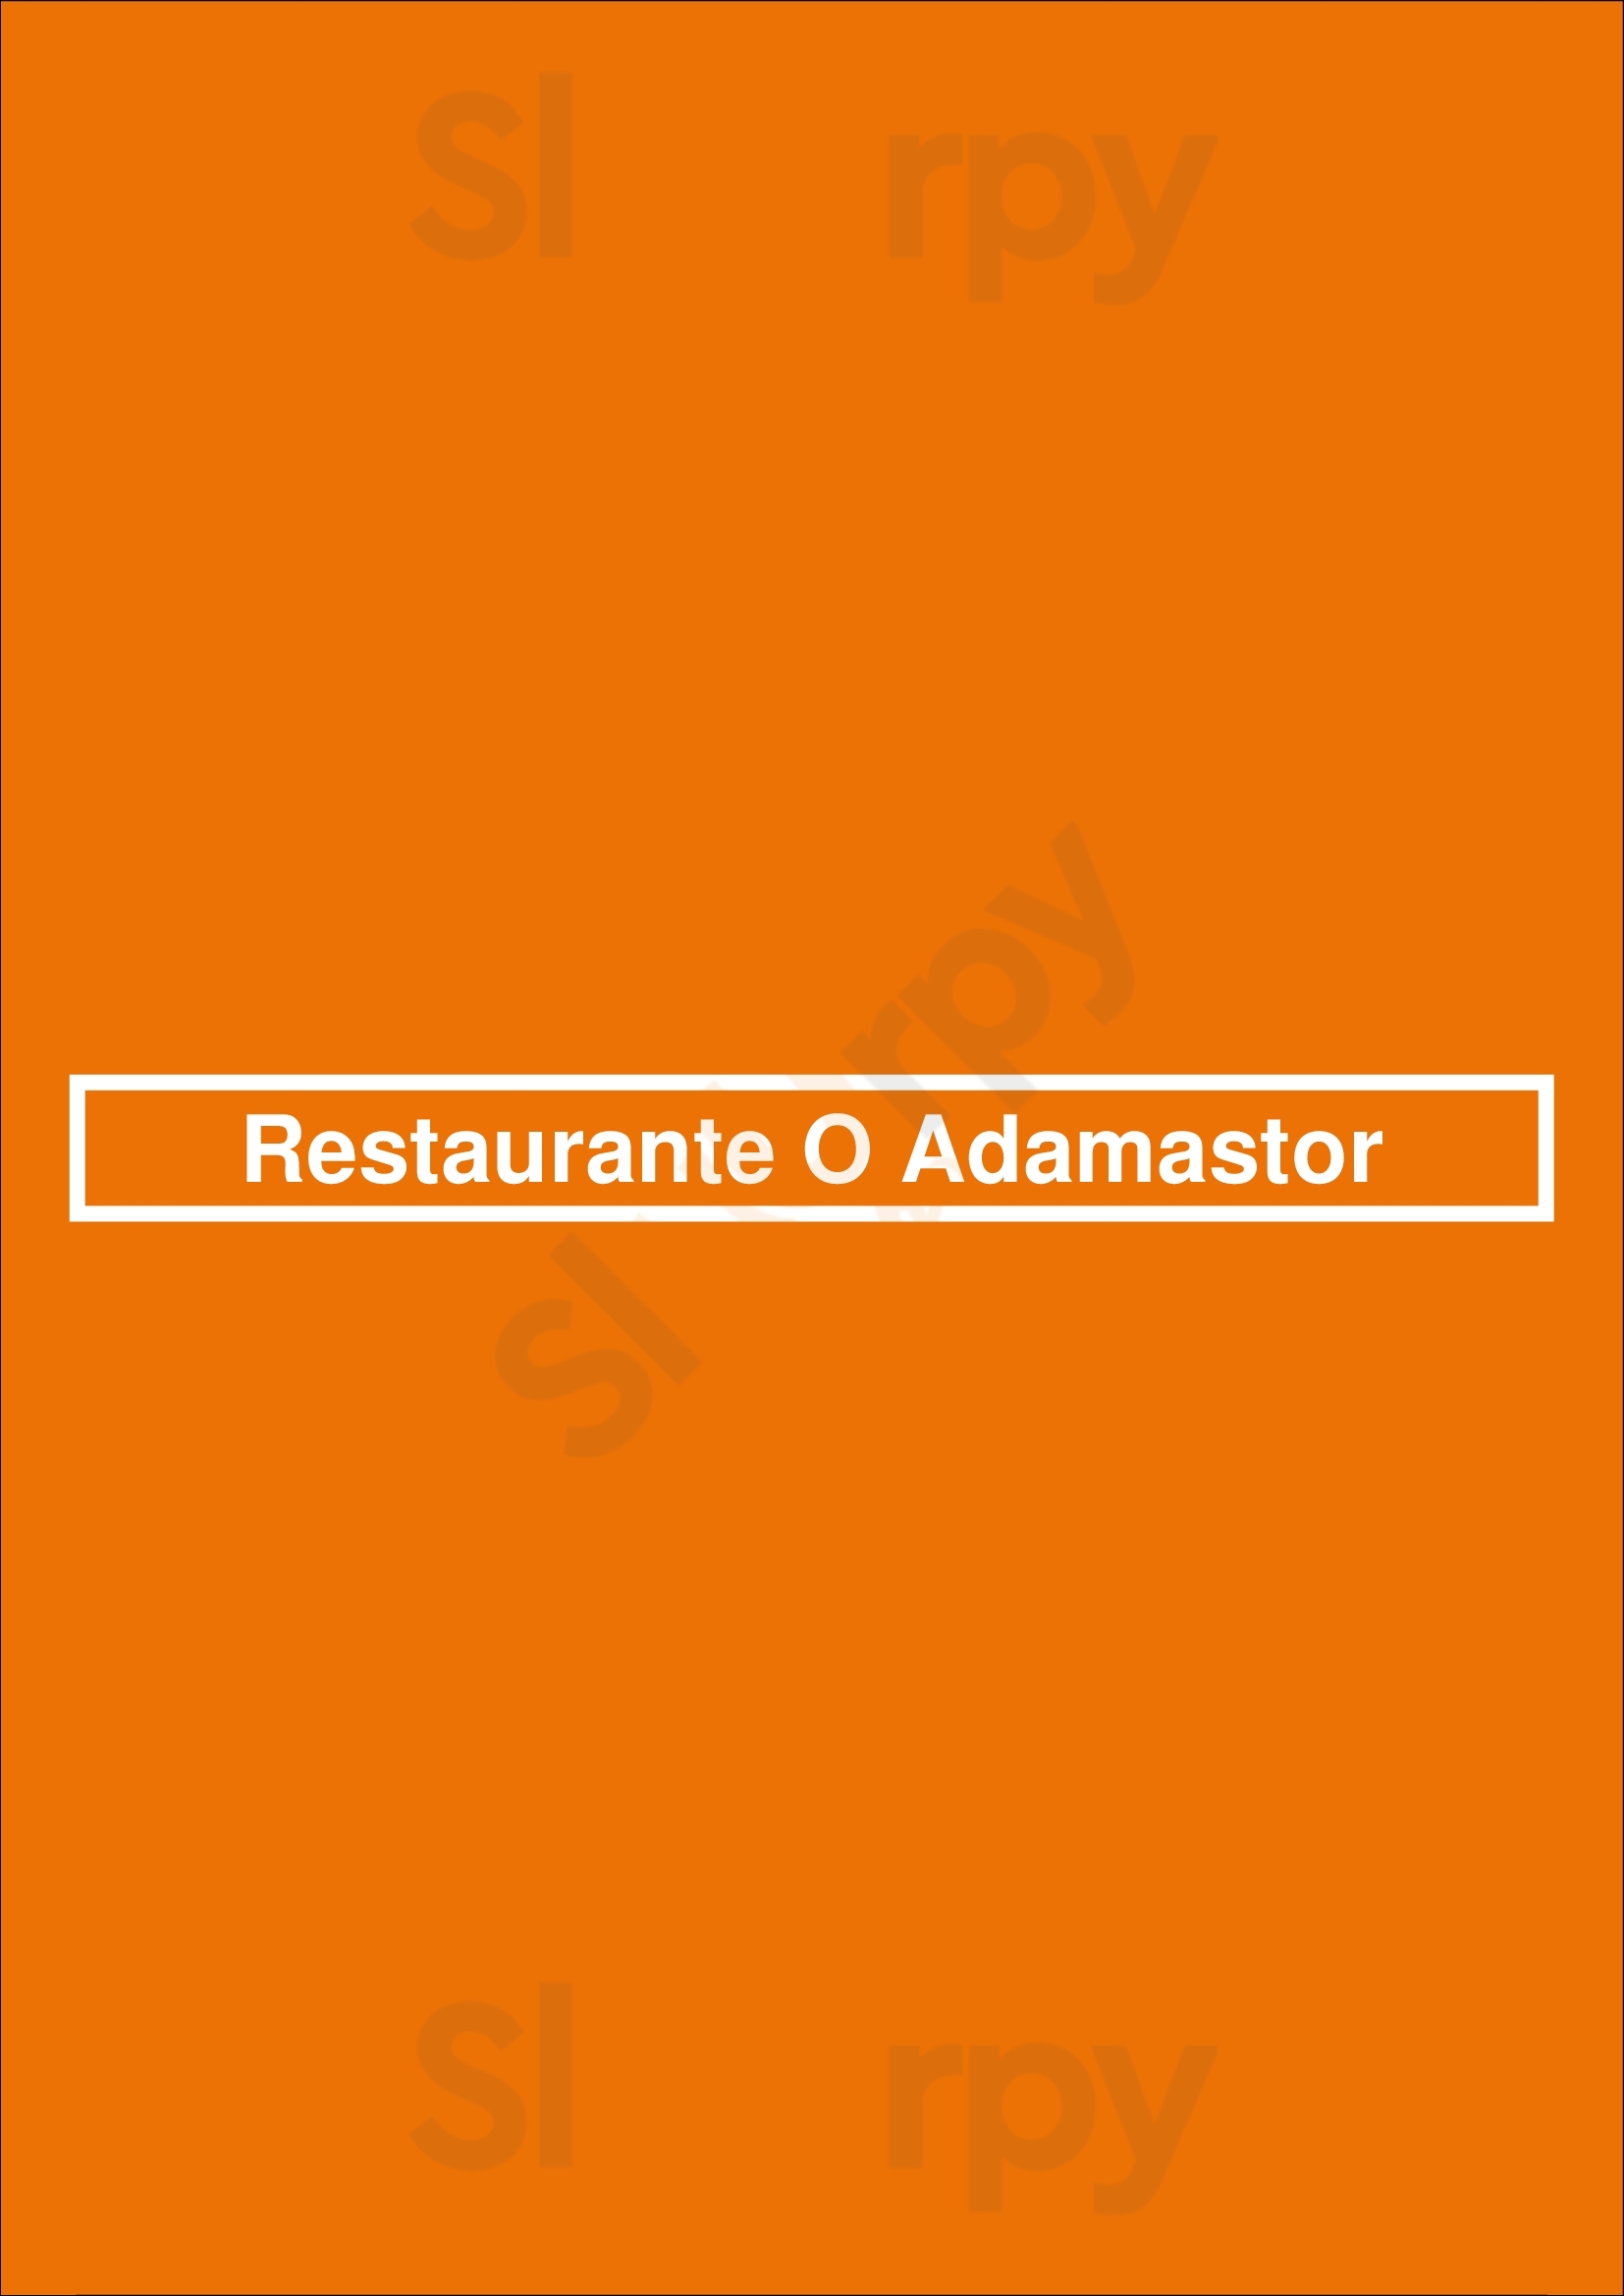 Restaurante O Adamastor Lisboa Menu - 1